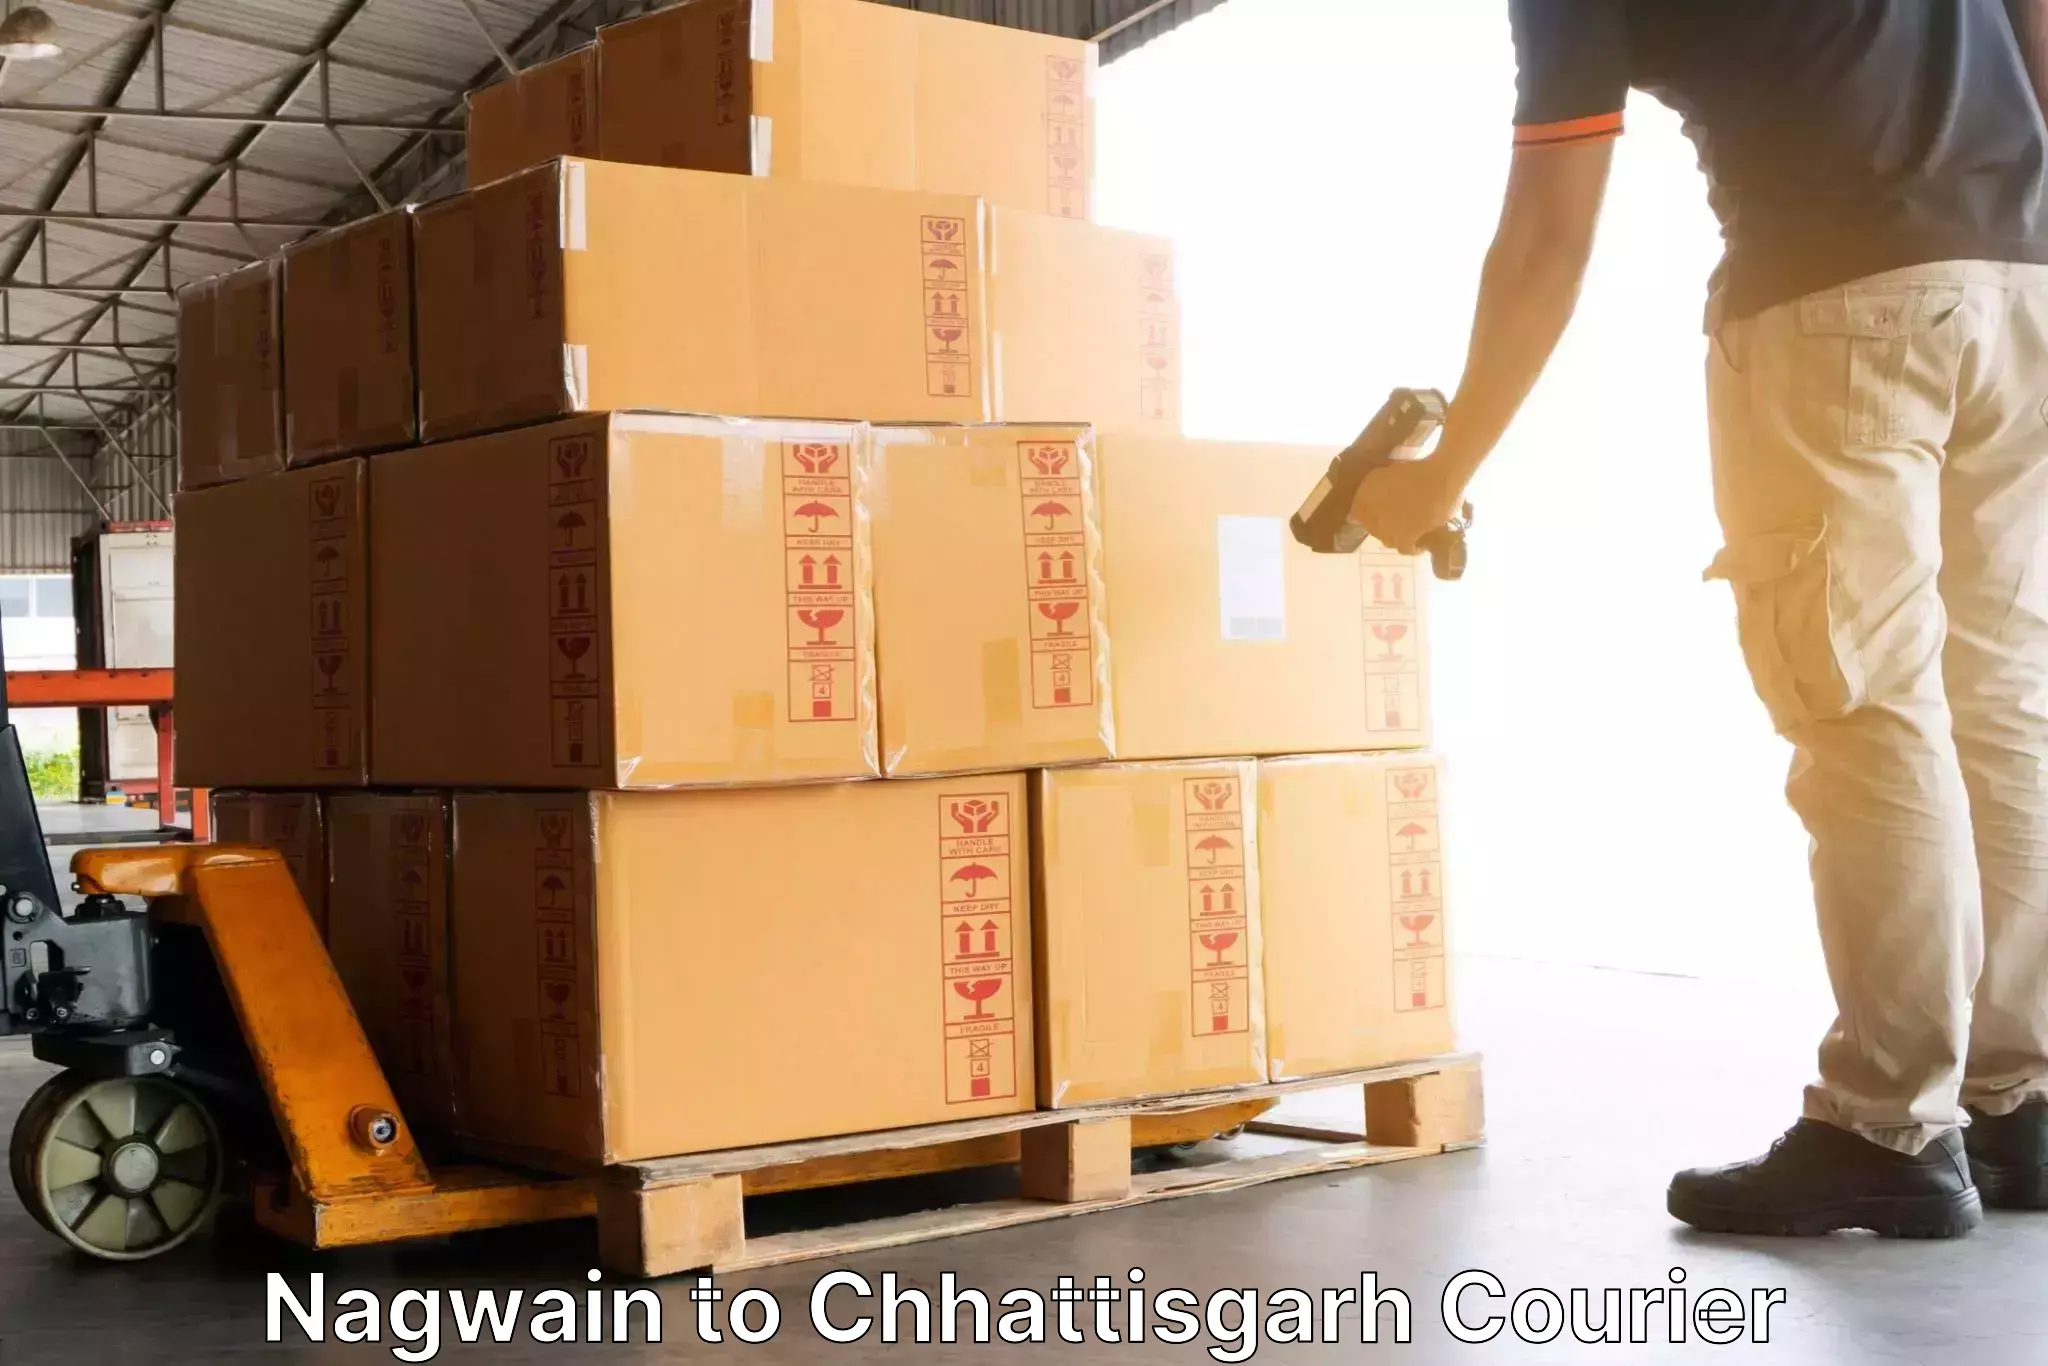 Customer-centric shipping Nagwain to Bijapur Chhattisgarh